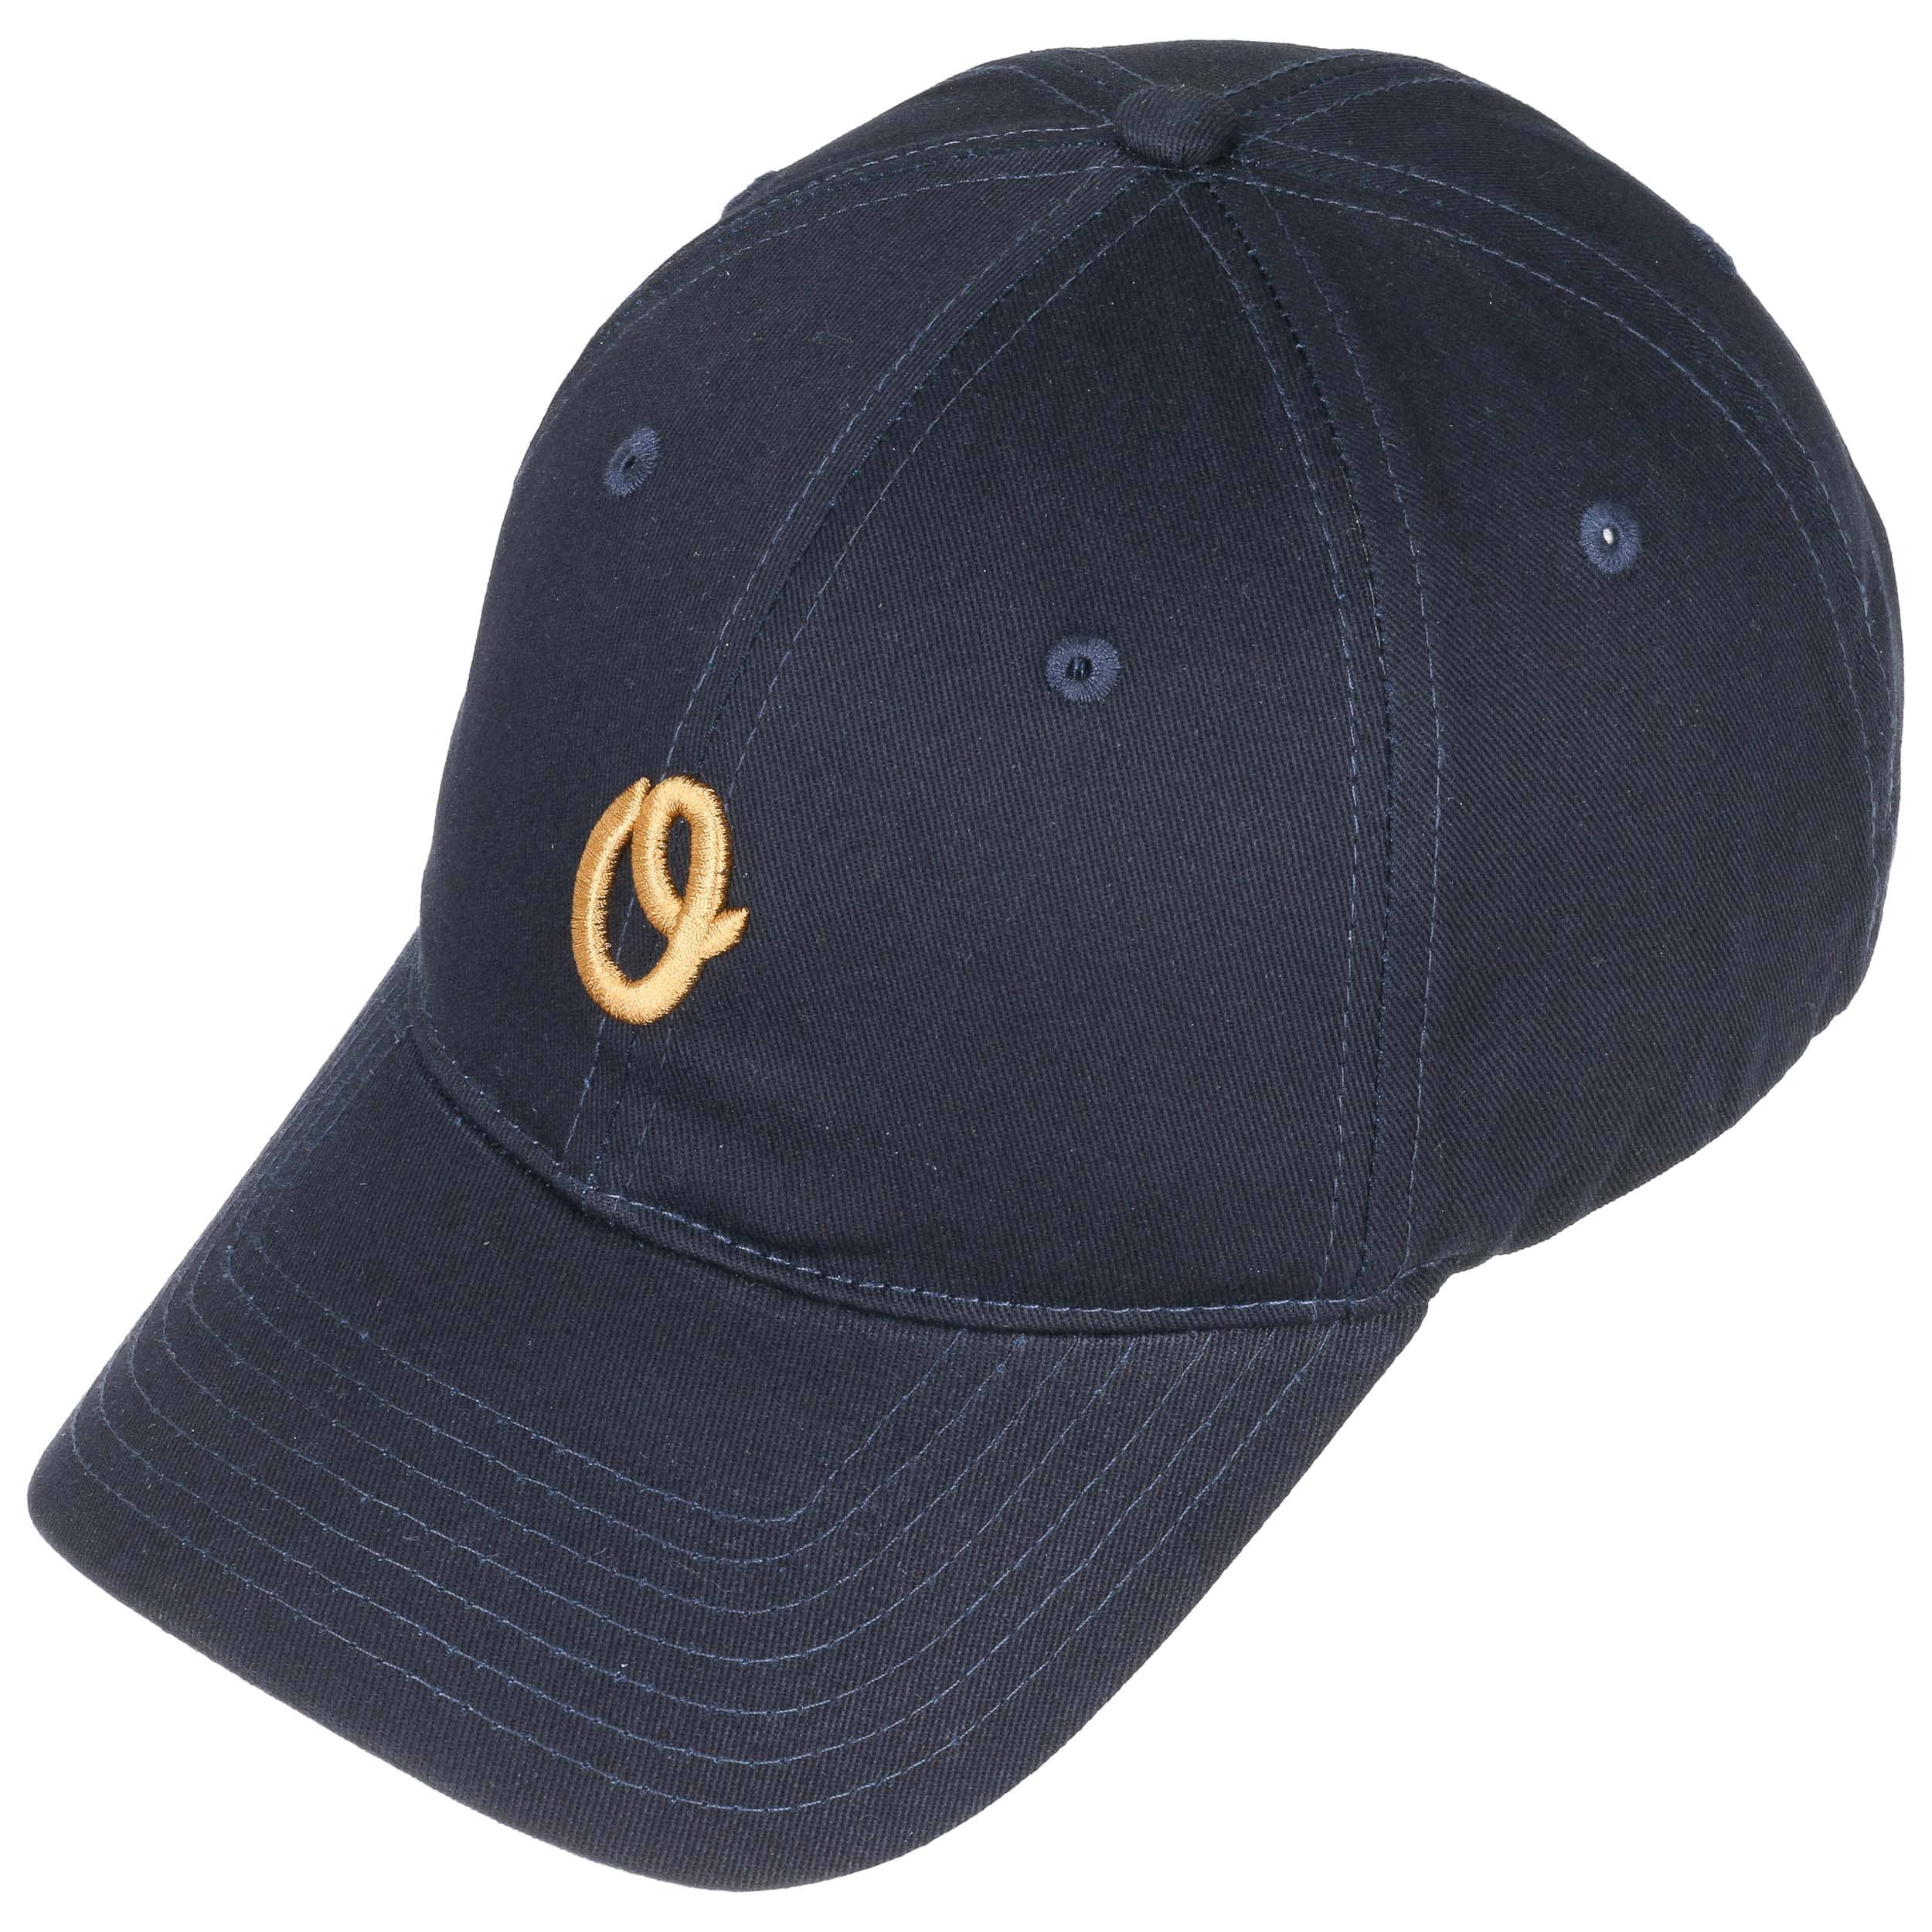 Miles Olo II Strapback Cap by Official Headwear - 24,95